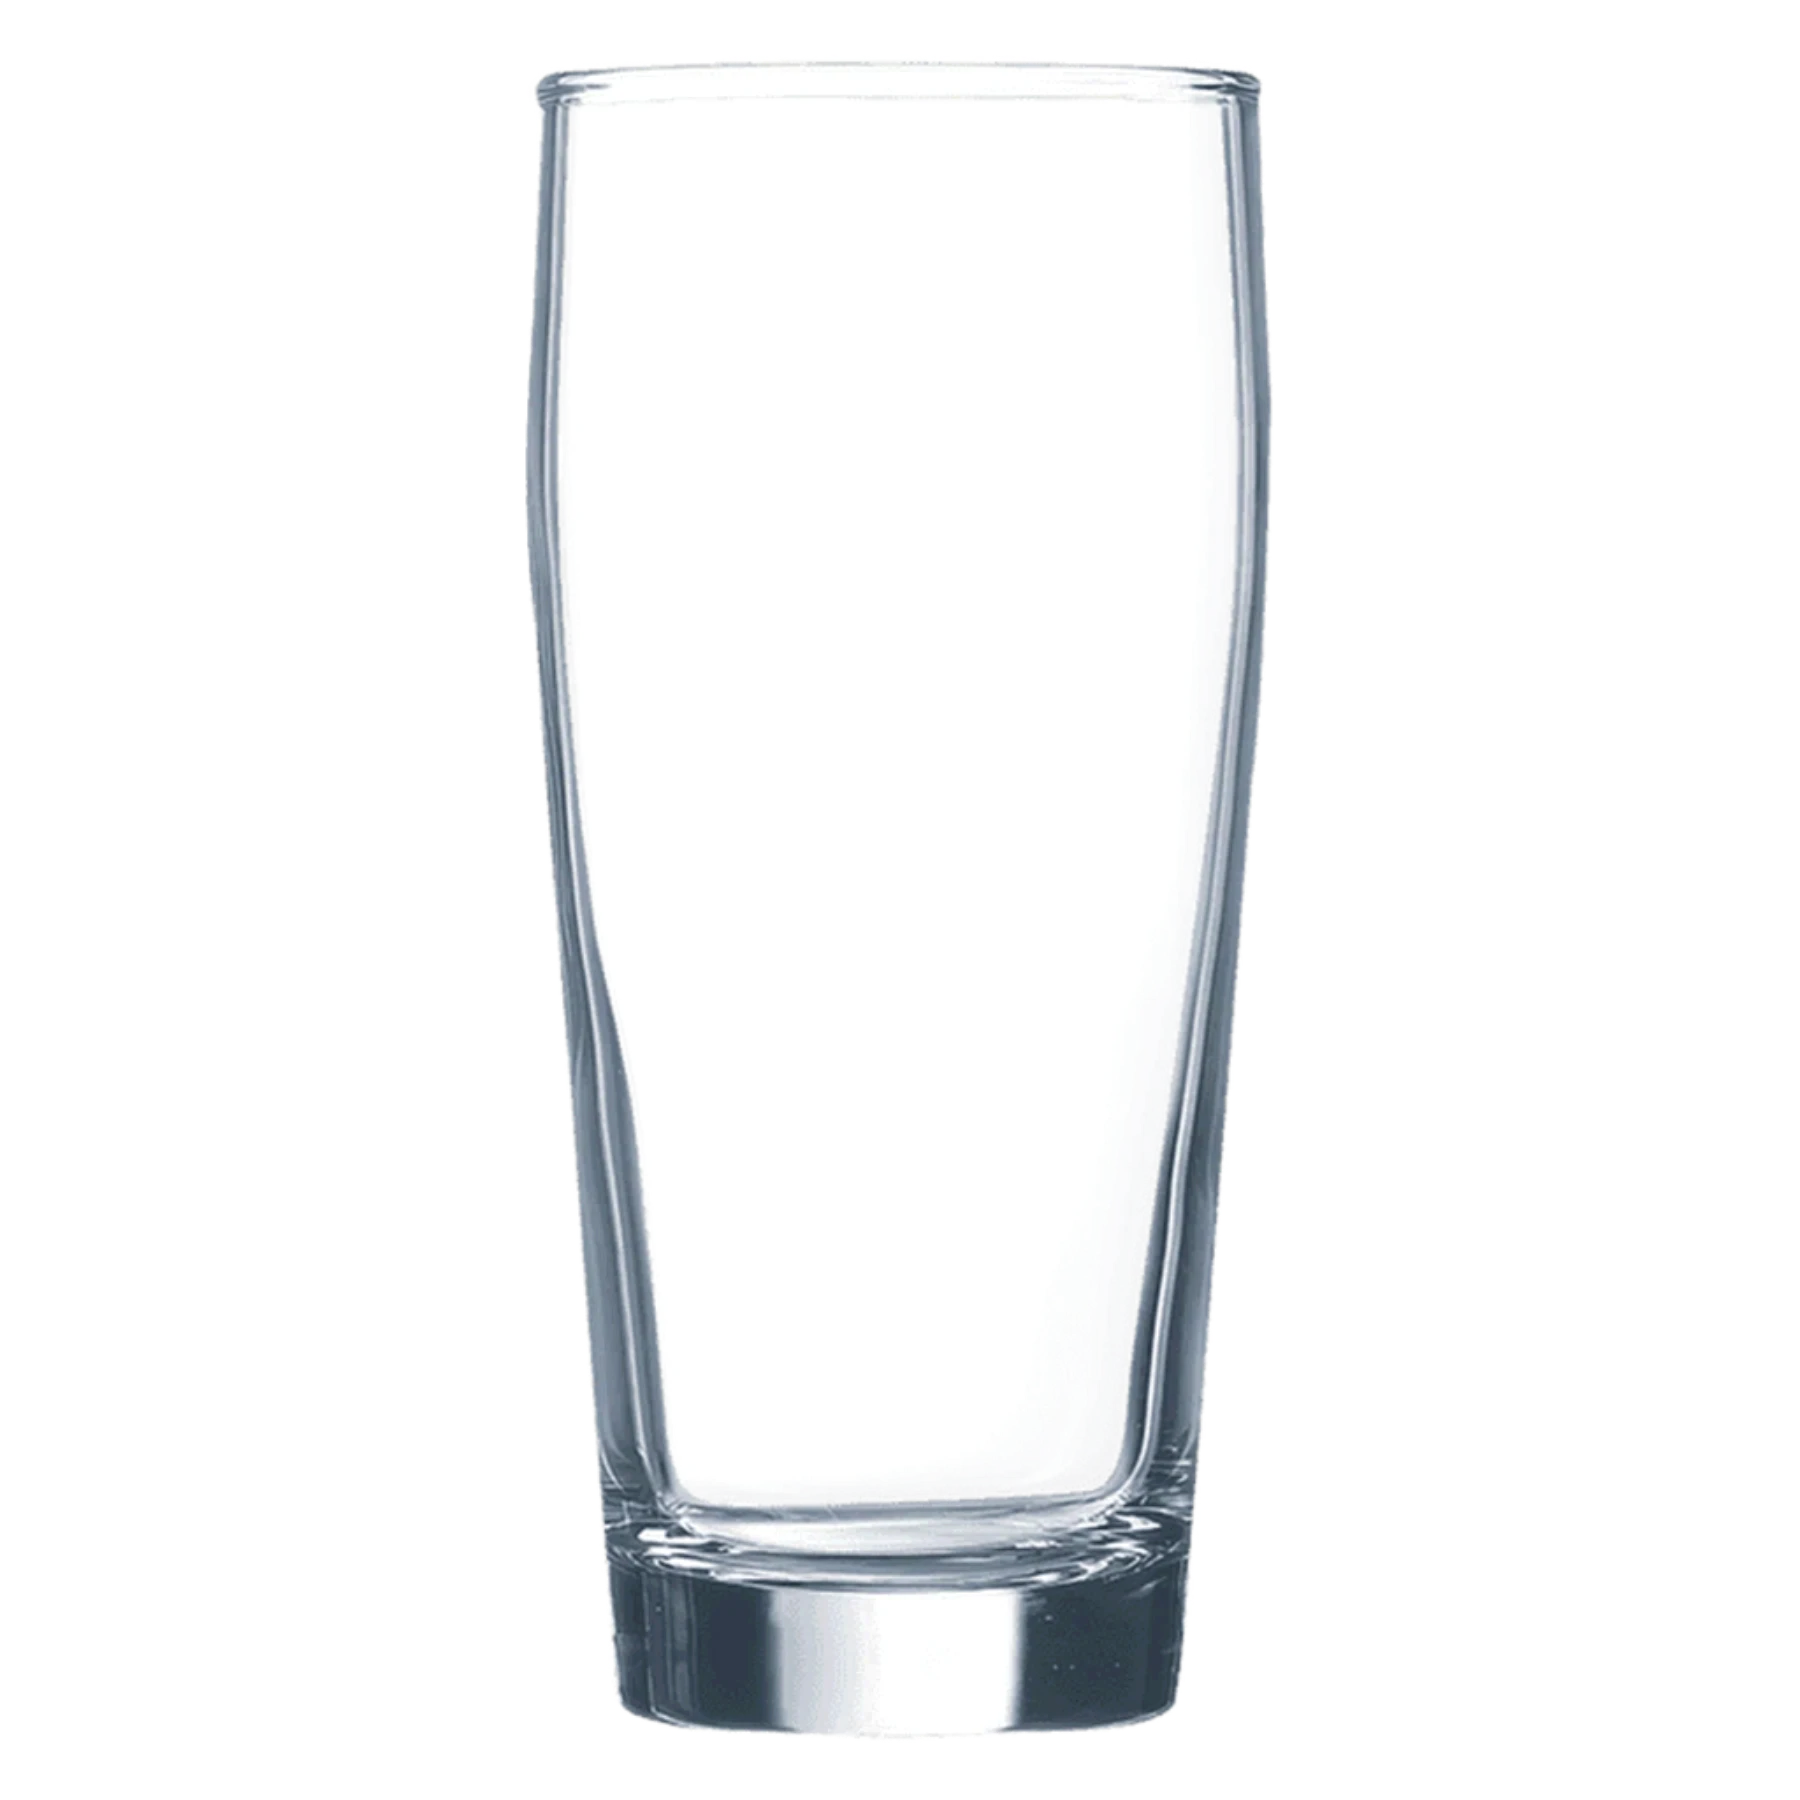 Polar Camel 16 oz. Willi Becher Beer Glass